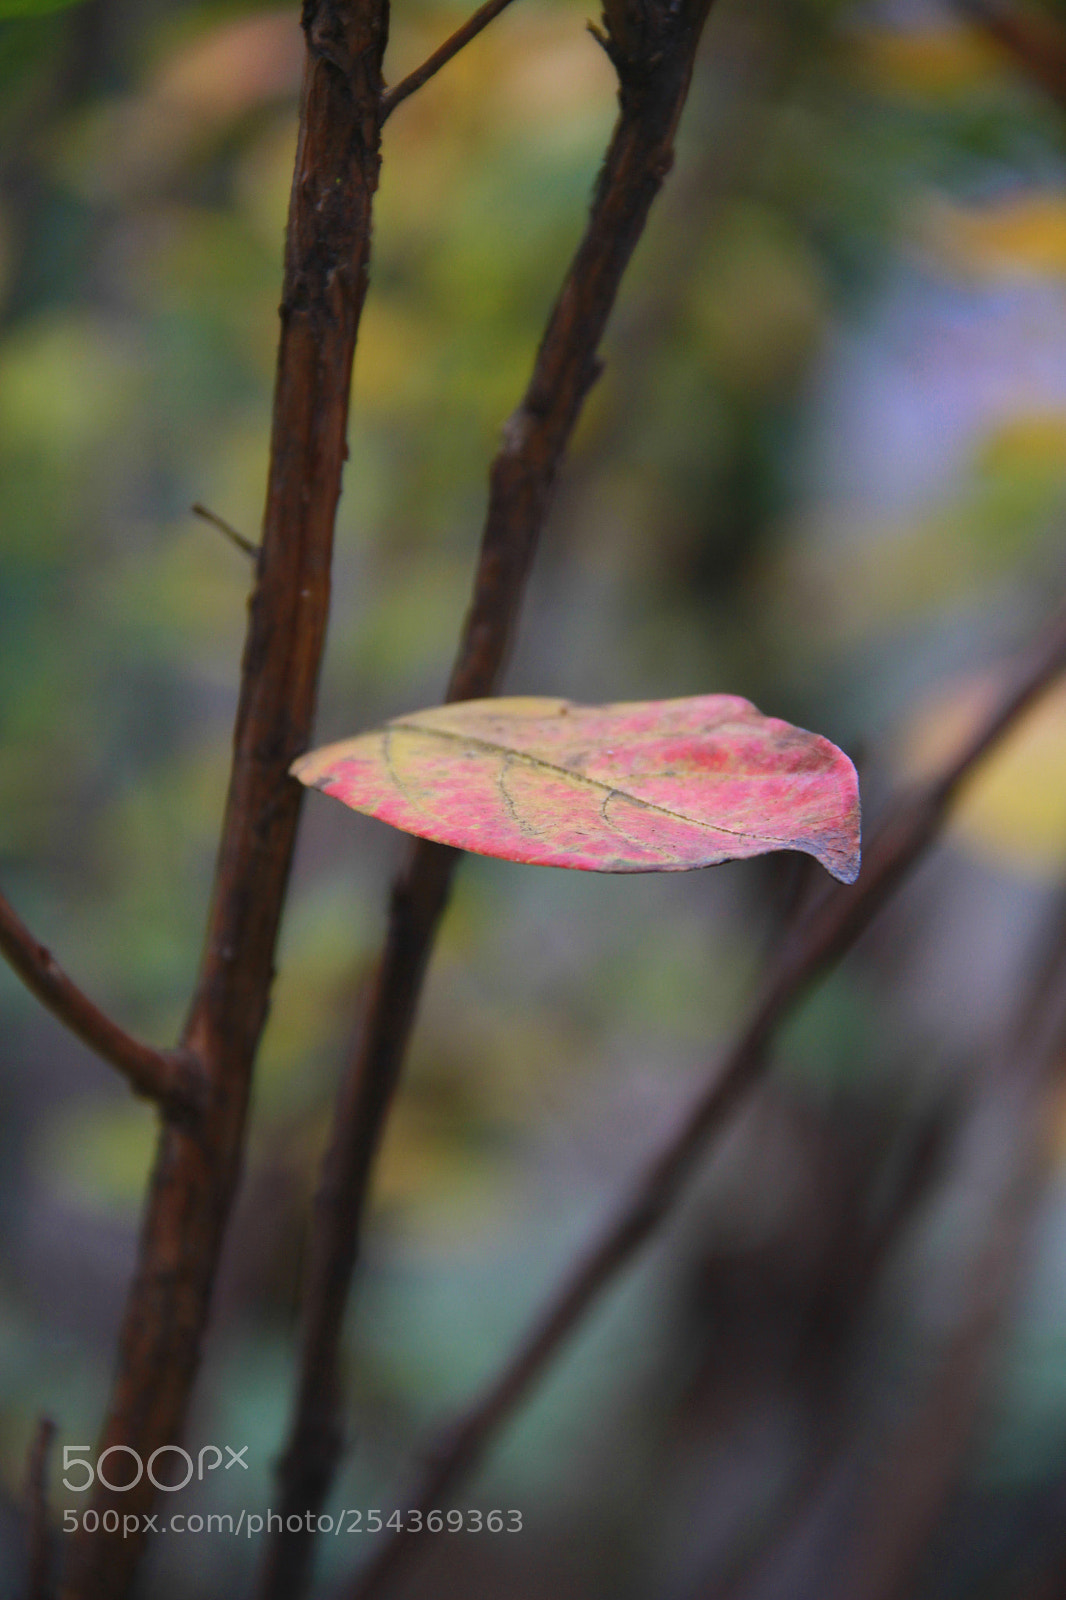 Canon EOS 7D sample photo. Each leaf has a photography